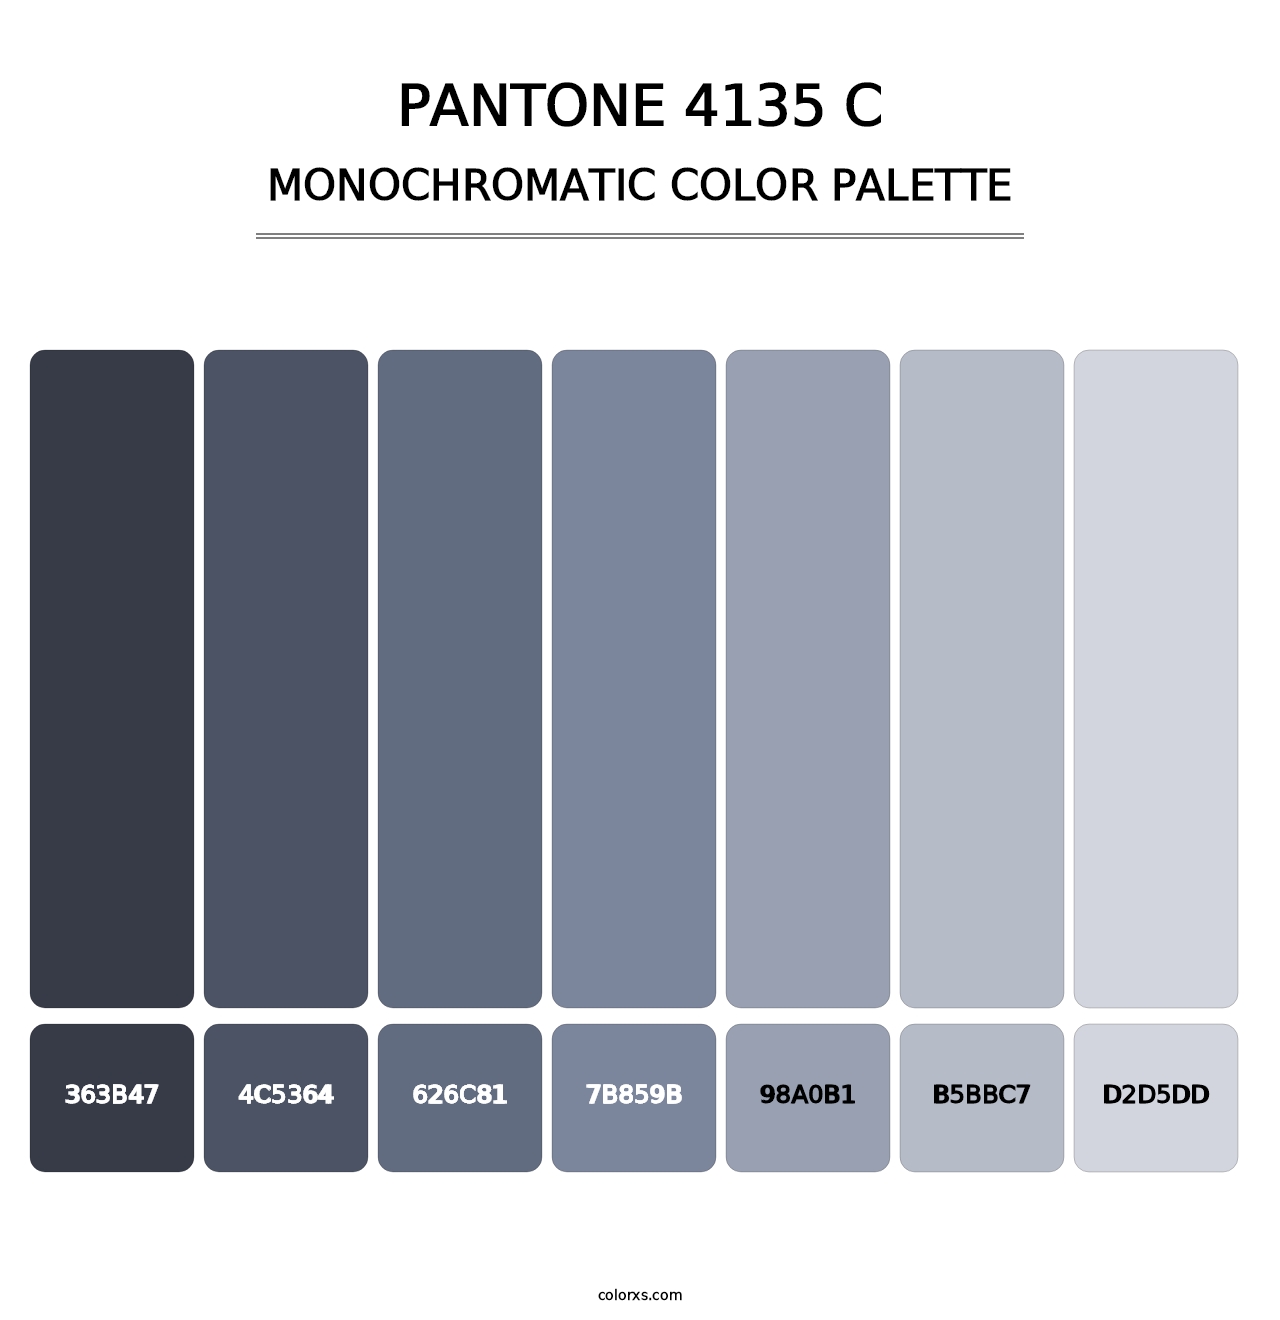 PANTONE 4135 C - Monochromatic Color Palette